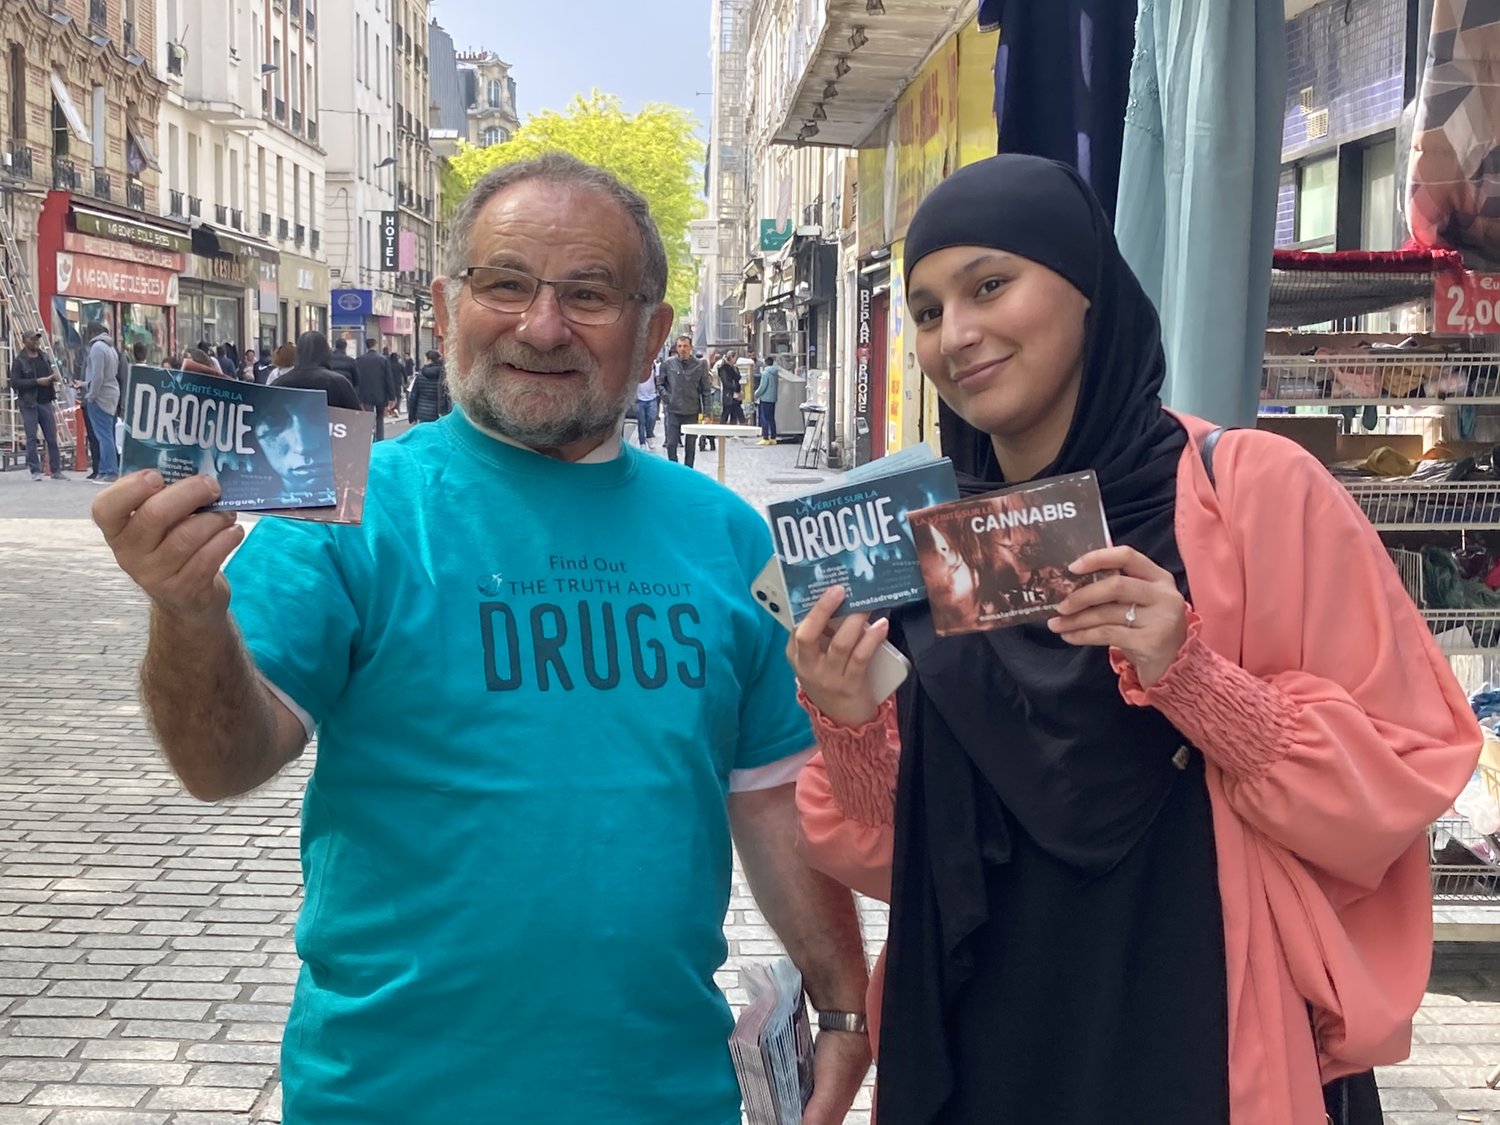 Brožury Truth About Drugs jsou o drogové edukaci založené na faktech a pomáhají lidem, aby se sami rozhodli, že nebudou brát drogy - Pařížští scientologové oslovují místní obyvatele formou jeden na jednoho s pravdou o drogách